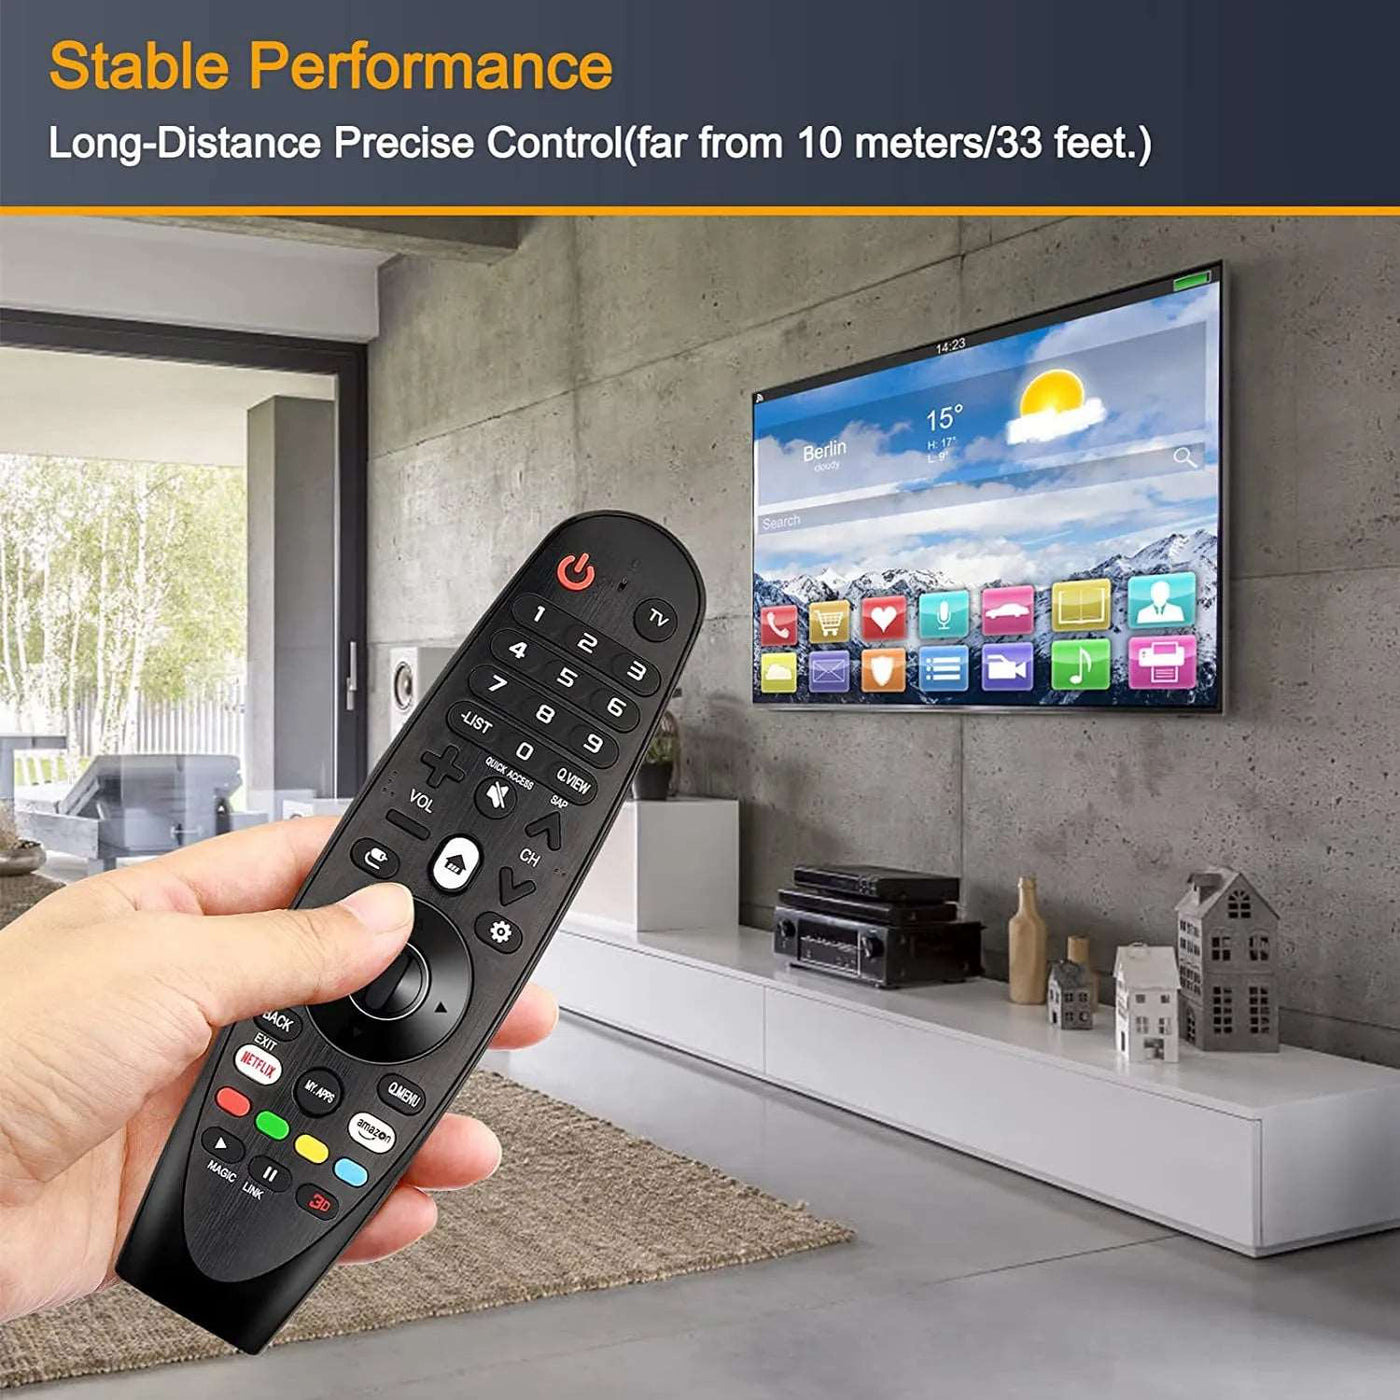 Muvit Magic Remote Control for LG Smart TV ( Non Voice )